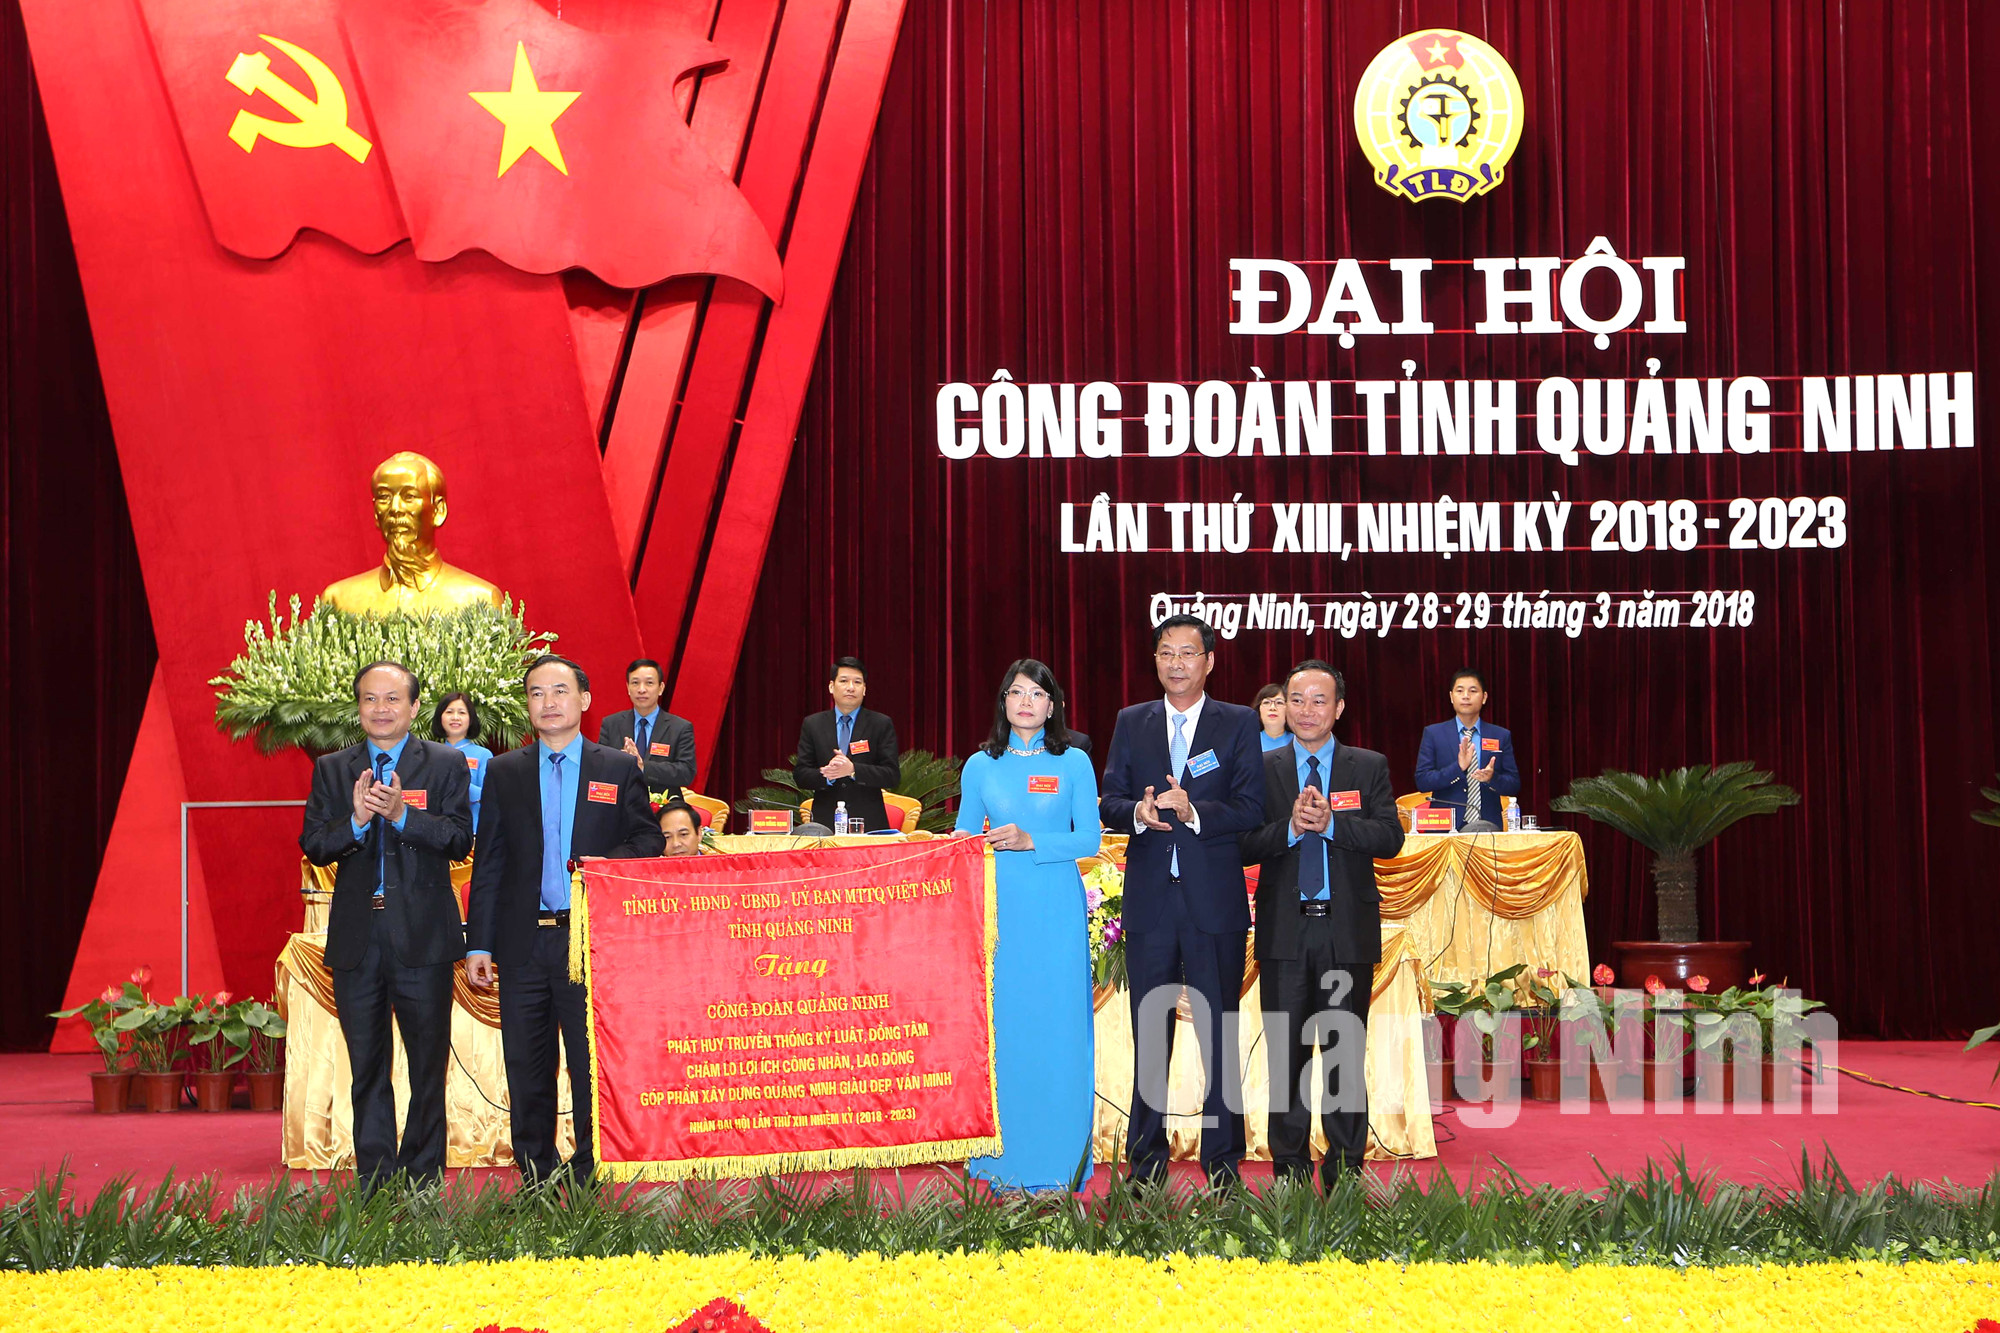 Tỉnh ủy - HĐND - UBND - Ủy ban MTTQ tỉnh tặng Công đoàn Quảng Ninh bức trướng mang dòng chữ: 